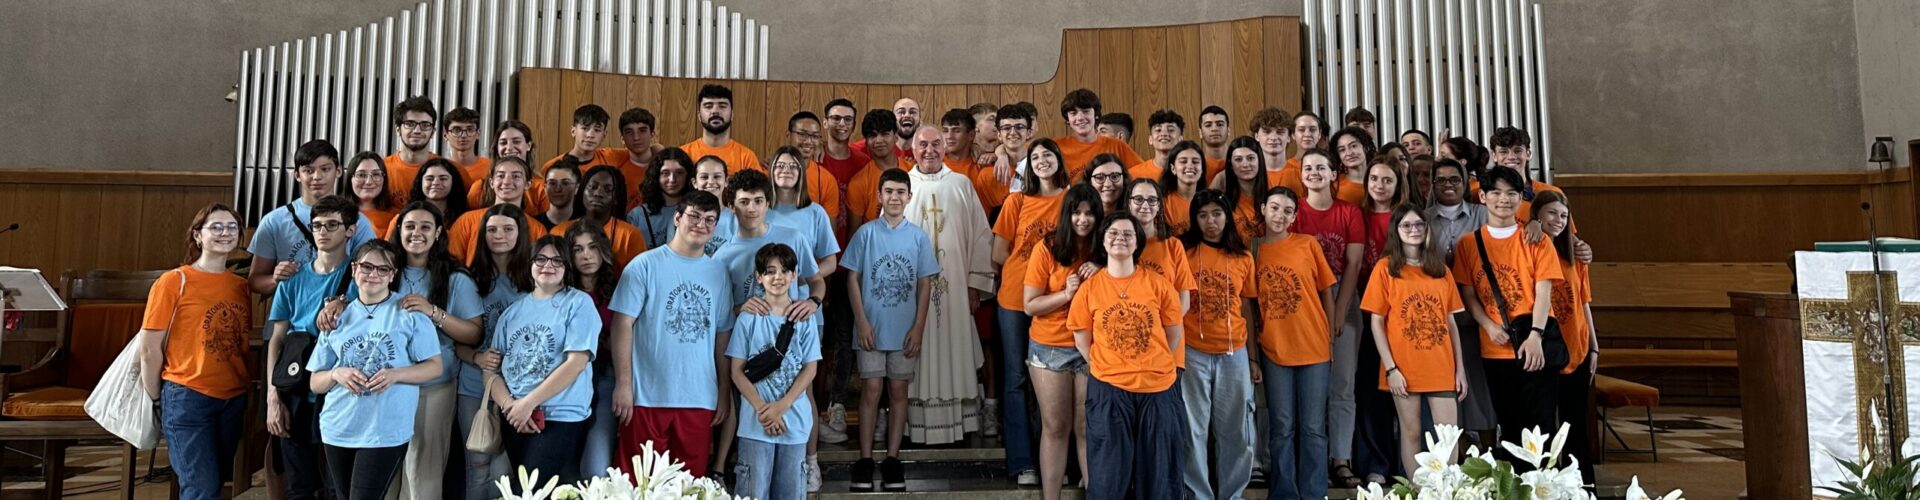 Pellegrinaggio parrocchiale a Lourdes 15-18 giugno